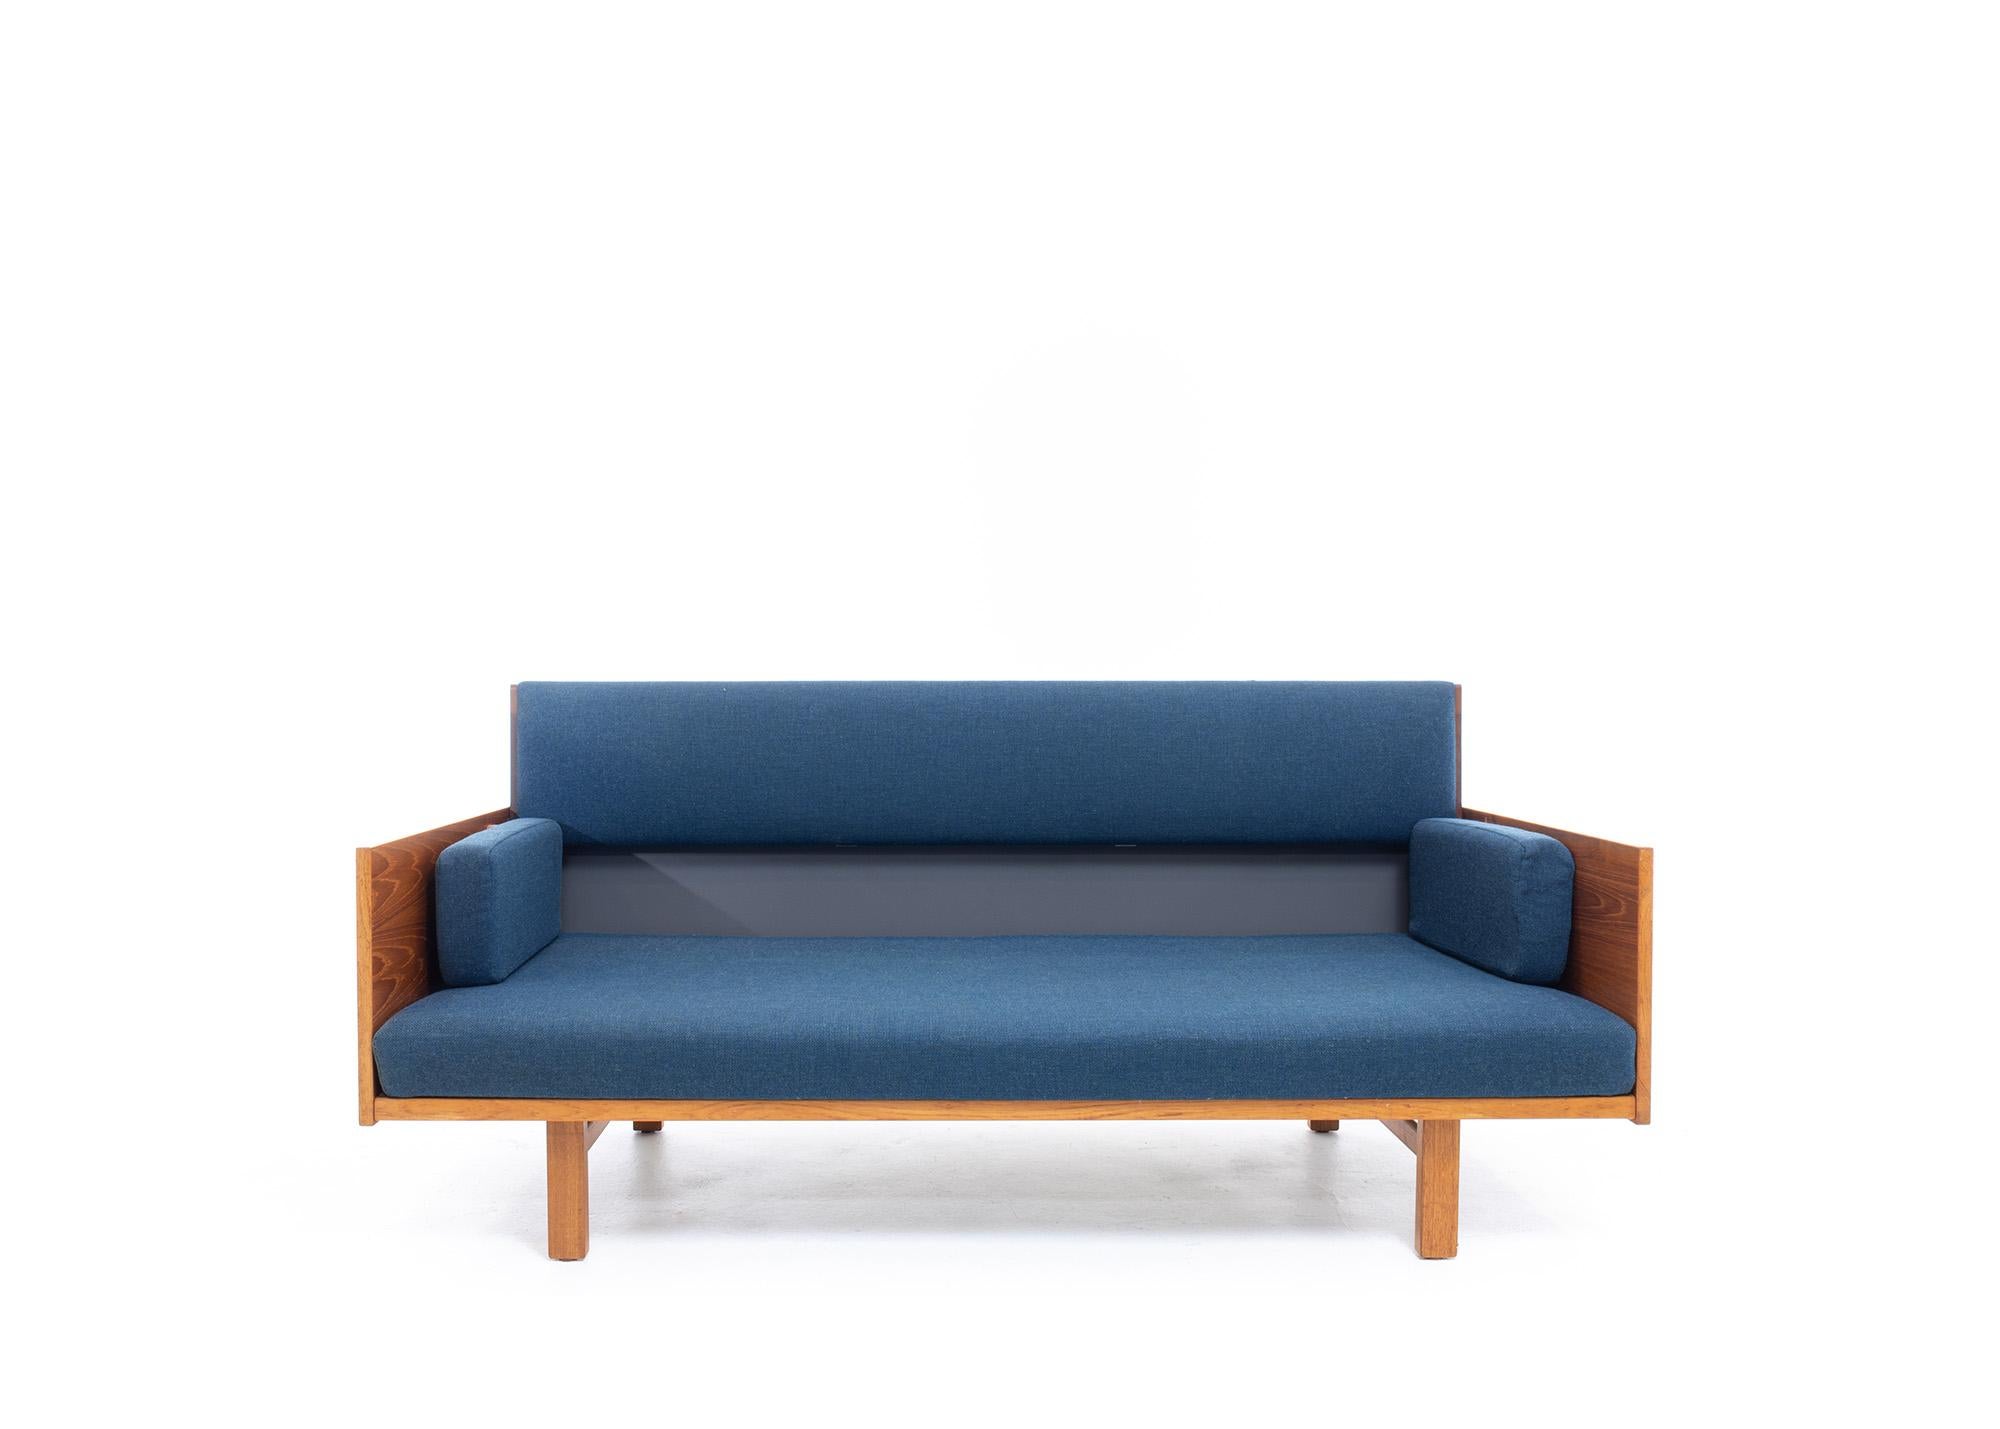 Das Teak GE-259 Adjustable Daybed/Sofa von Hans Wegner für Getama ist ein atemberaubendes modernes Möbelstück aus der Mitte des Jahrhunderts, das Stil und Vielseitigkeit vereint.

Dieses moderne Daybed/Sofa aus der Mitte des Jahrhunderts ist aus